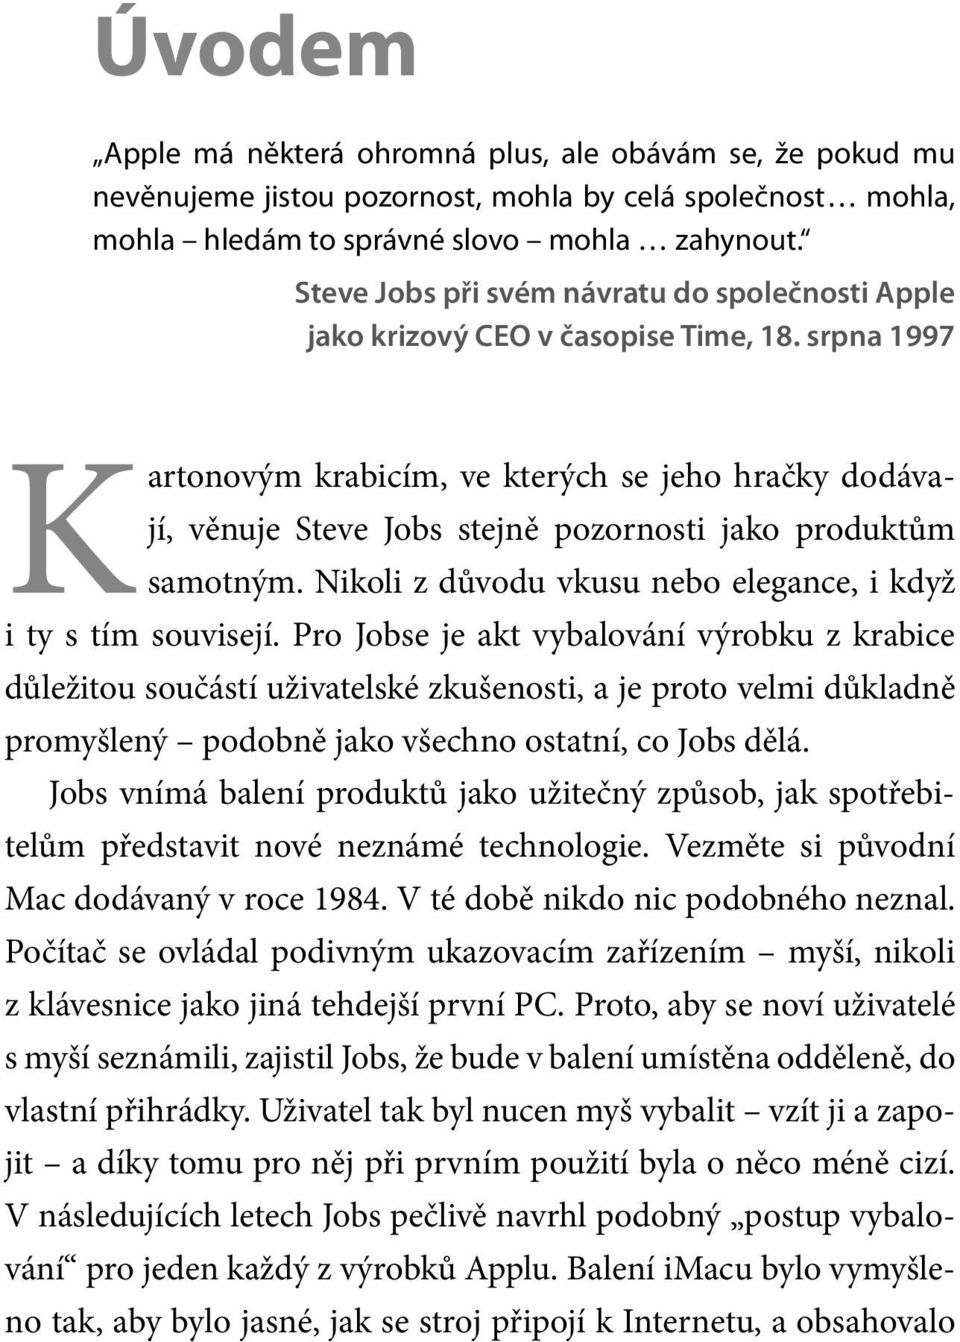 srpna 1997 Kartonovým krabicím, ve kterých se jeho hračky dodávají, věnuje Steve Jobs stejně pozornosti jako produktům samotným. Nikoli z důvodu vkusu nebo elegance, i když i ty s tím souvisejí.